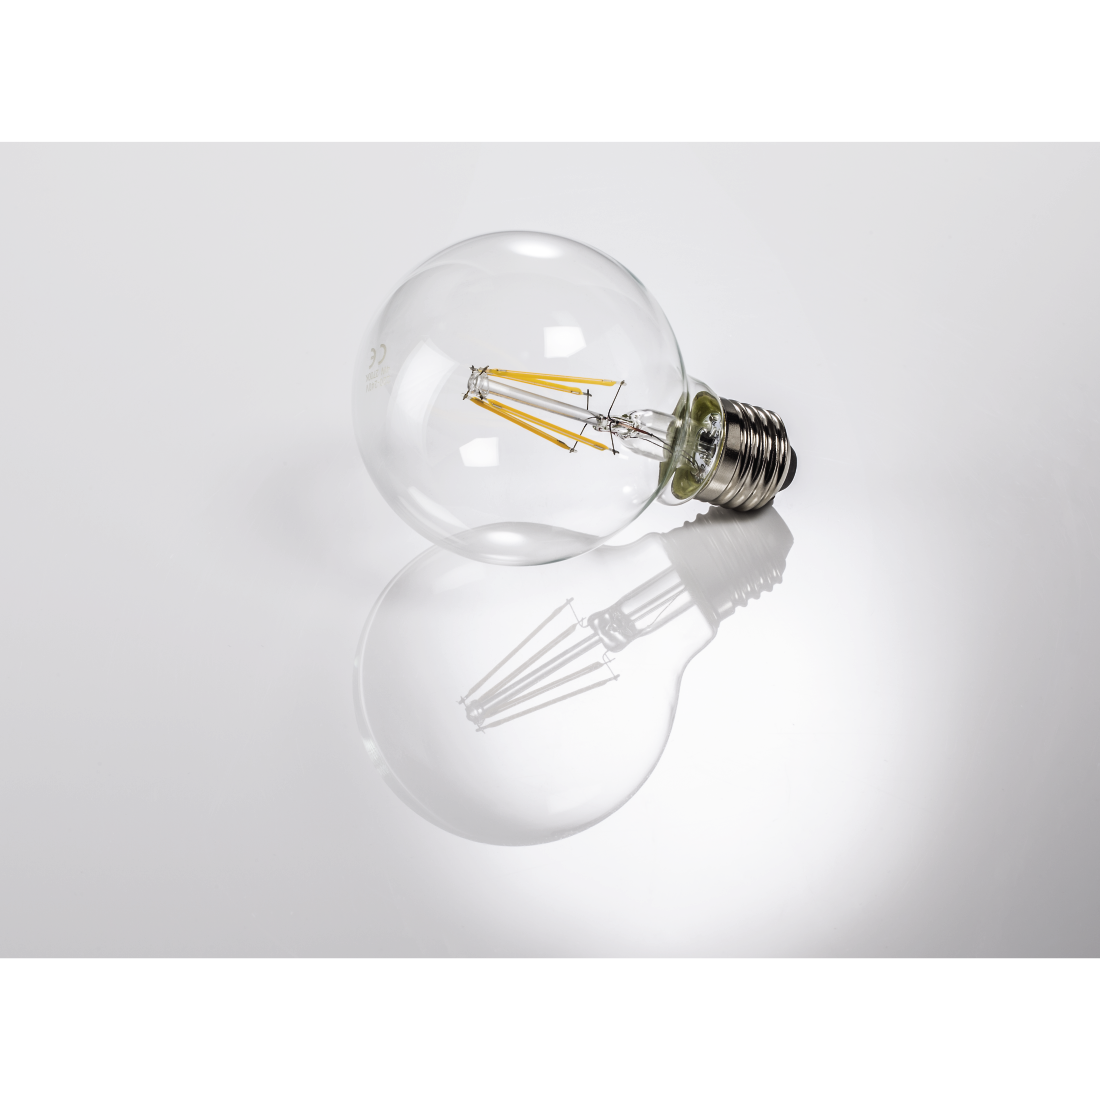 abx3 High-Res Image 3 - Xavax, Ampoule filament à LED, E27, 470lm rempl. ampoule globe 40W, blc chaud